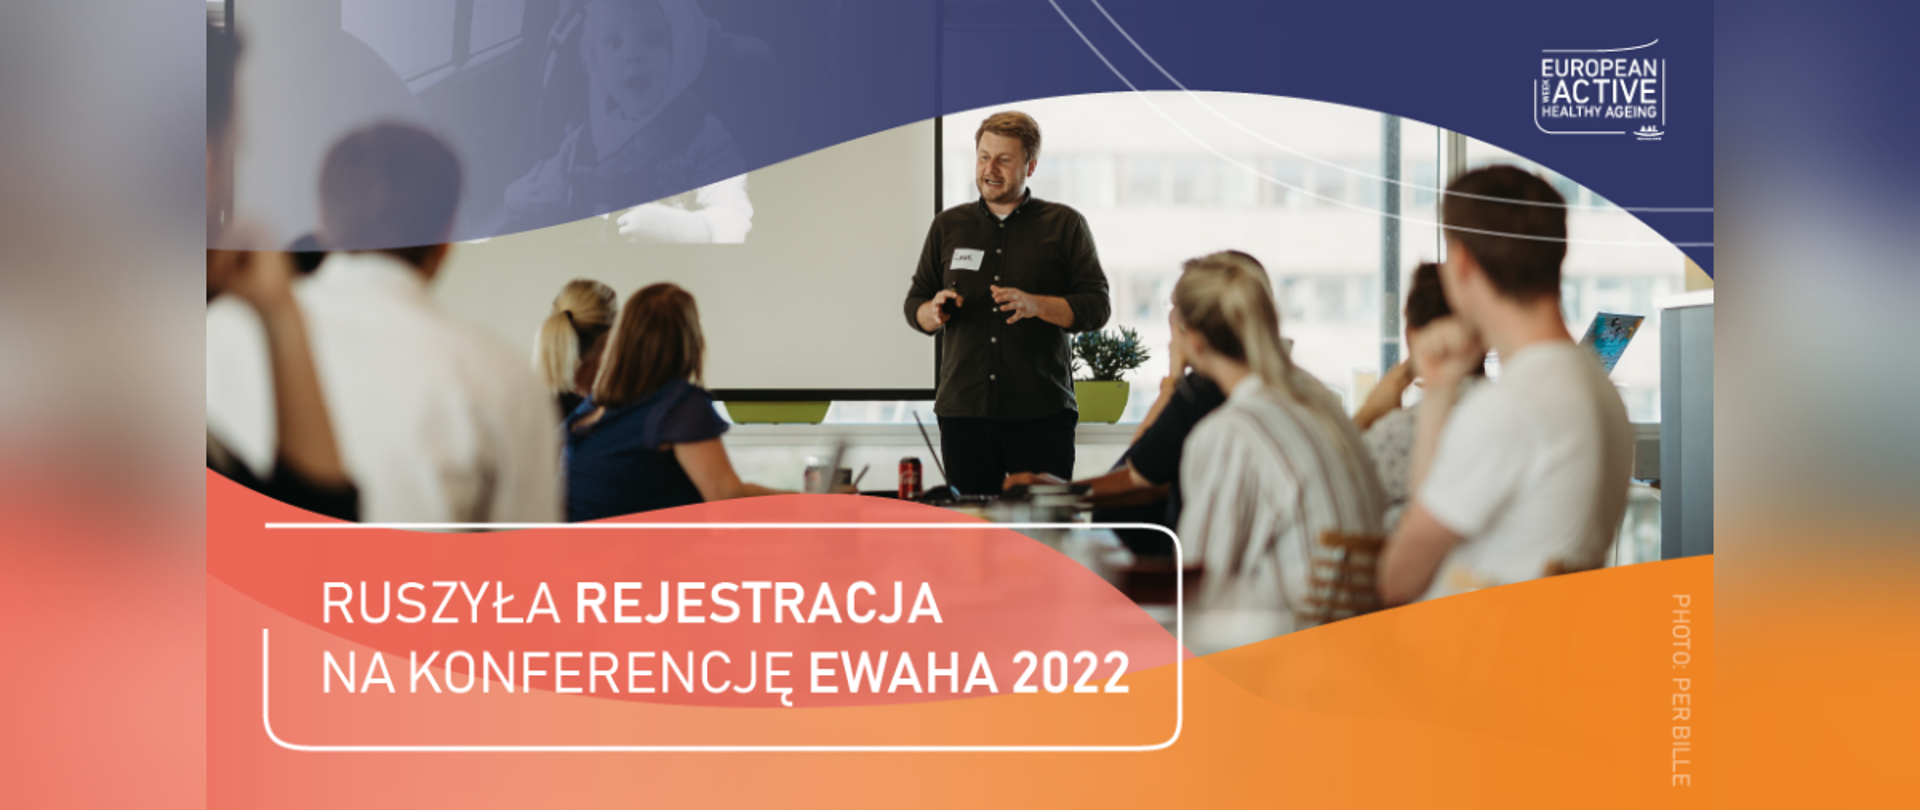 Ruszyła rejestracja na konferencję EWAHA 2022